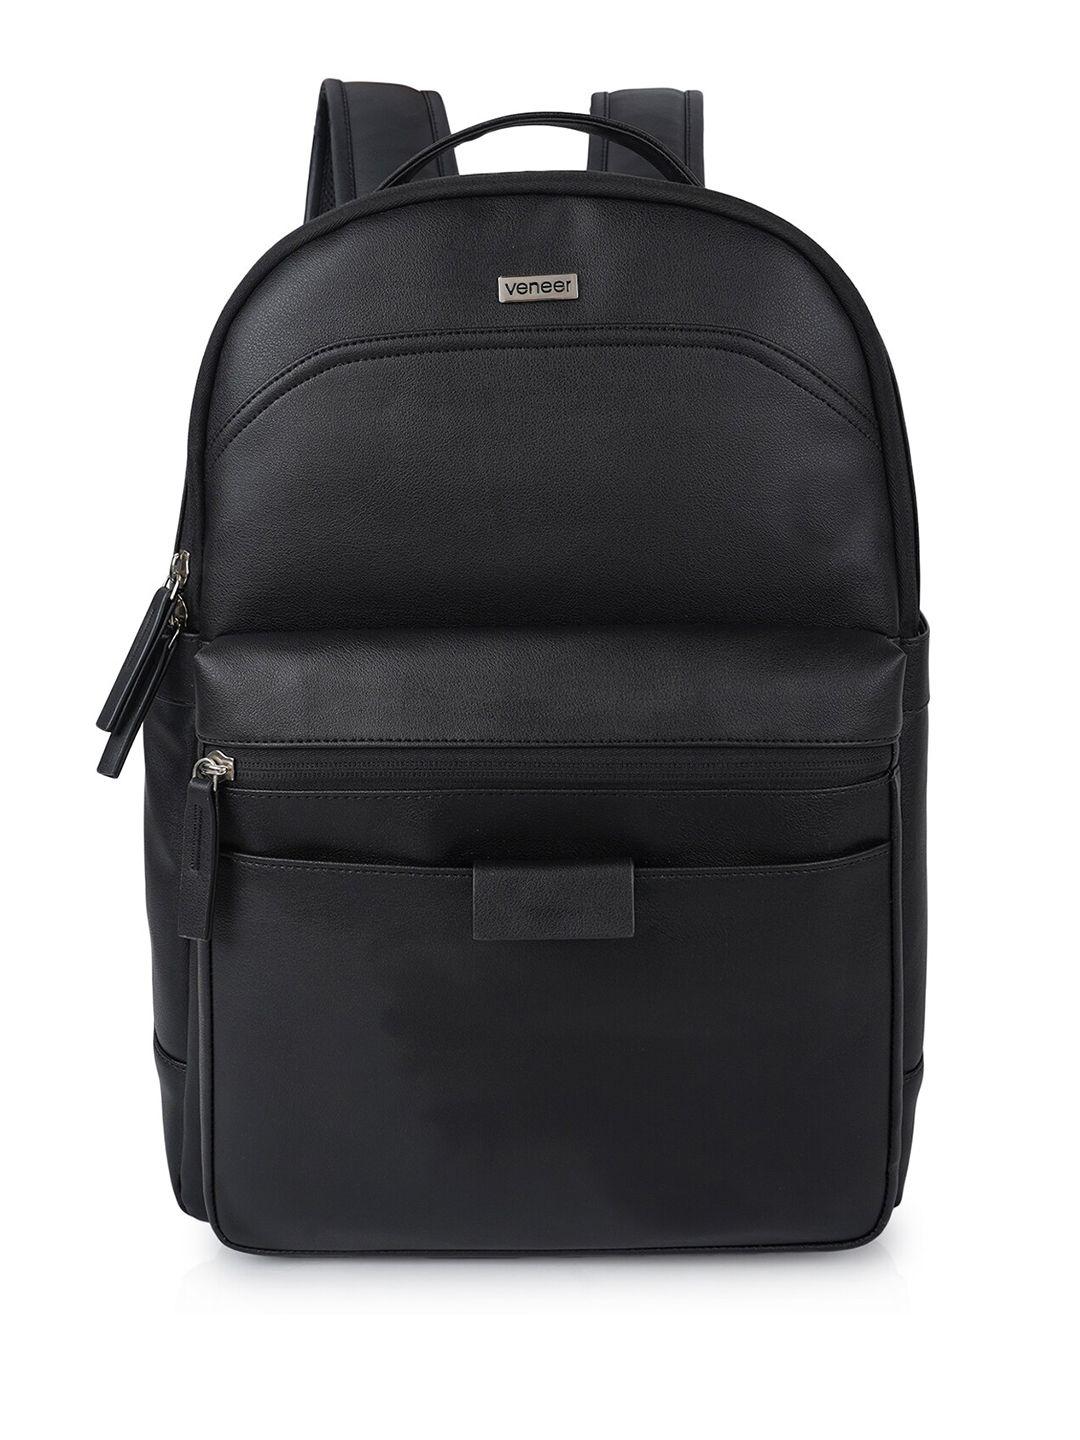 veneer unisex water resistant leather 16 inch laptop backpack